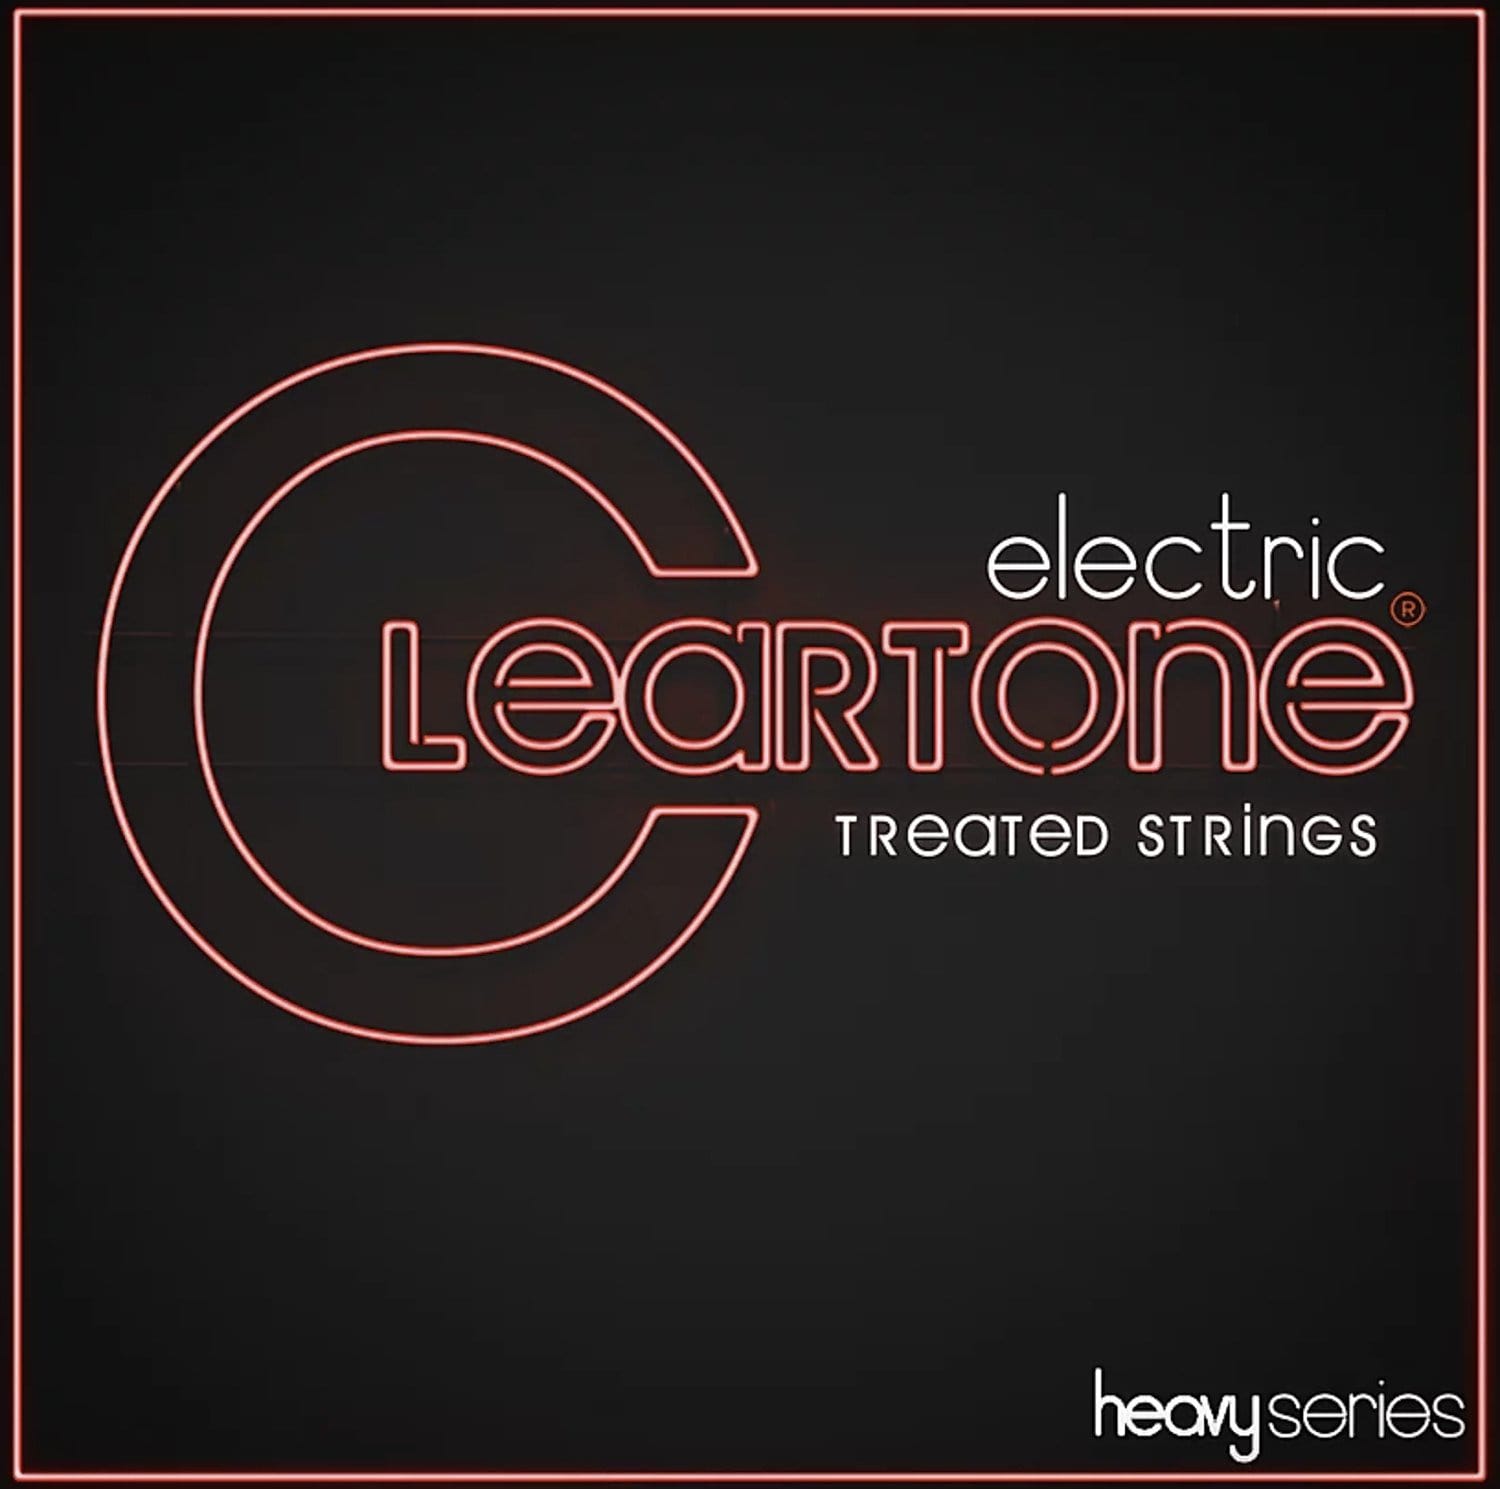 Cleartone Strings 9456 Heavy Series Monster Drop D Gauge: 11-56